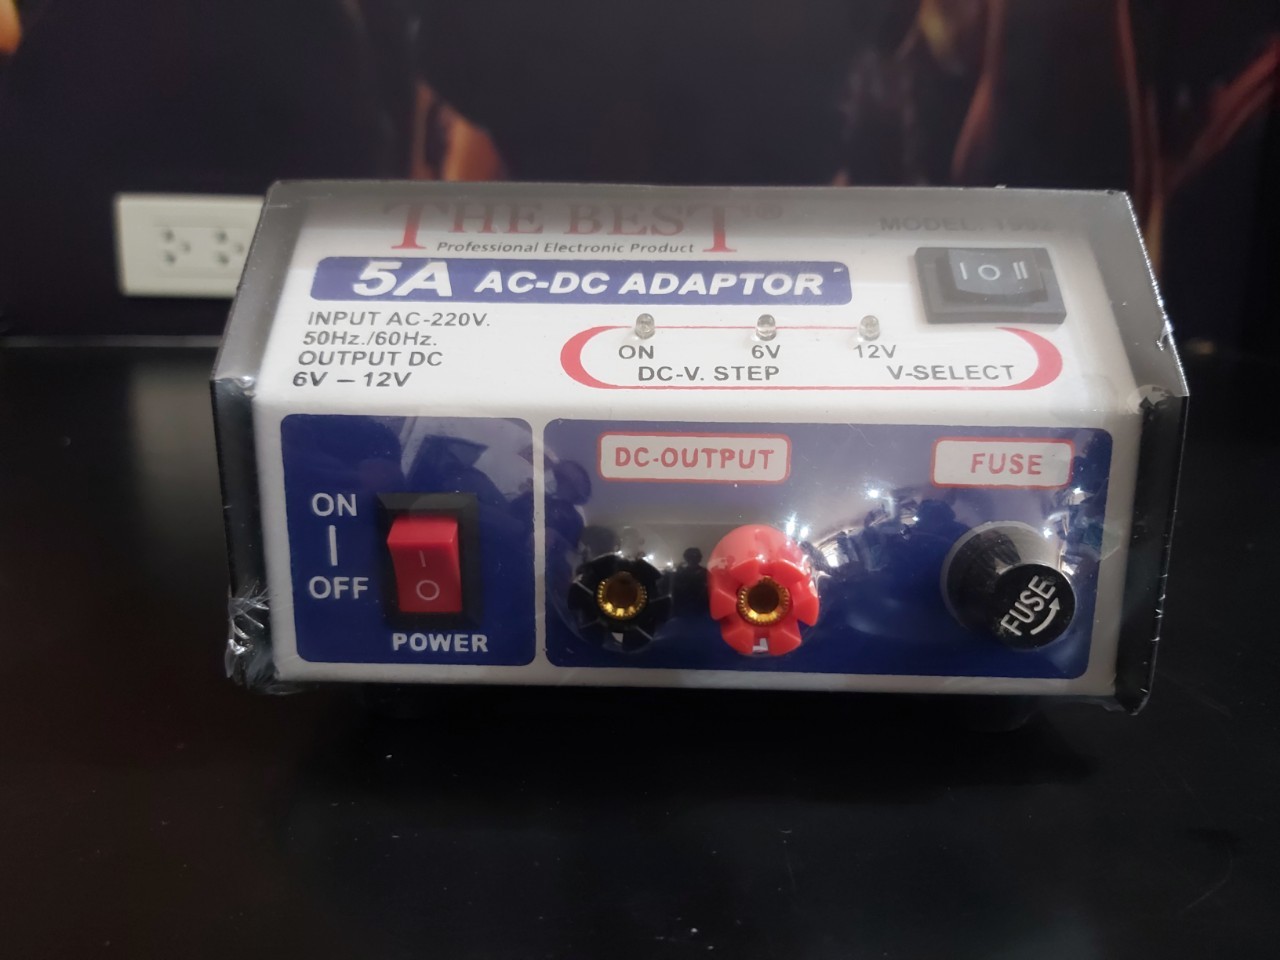 AC-DC ADAPTOR 5A